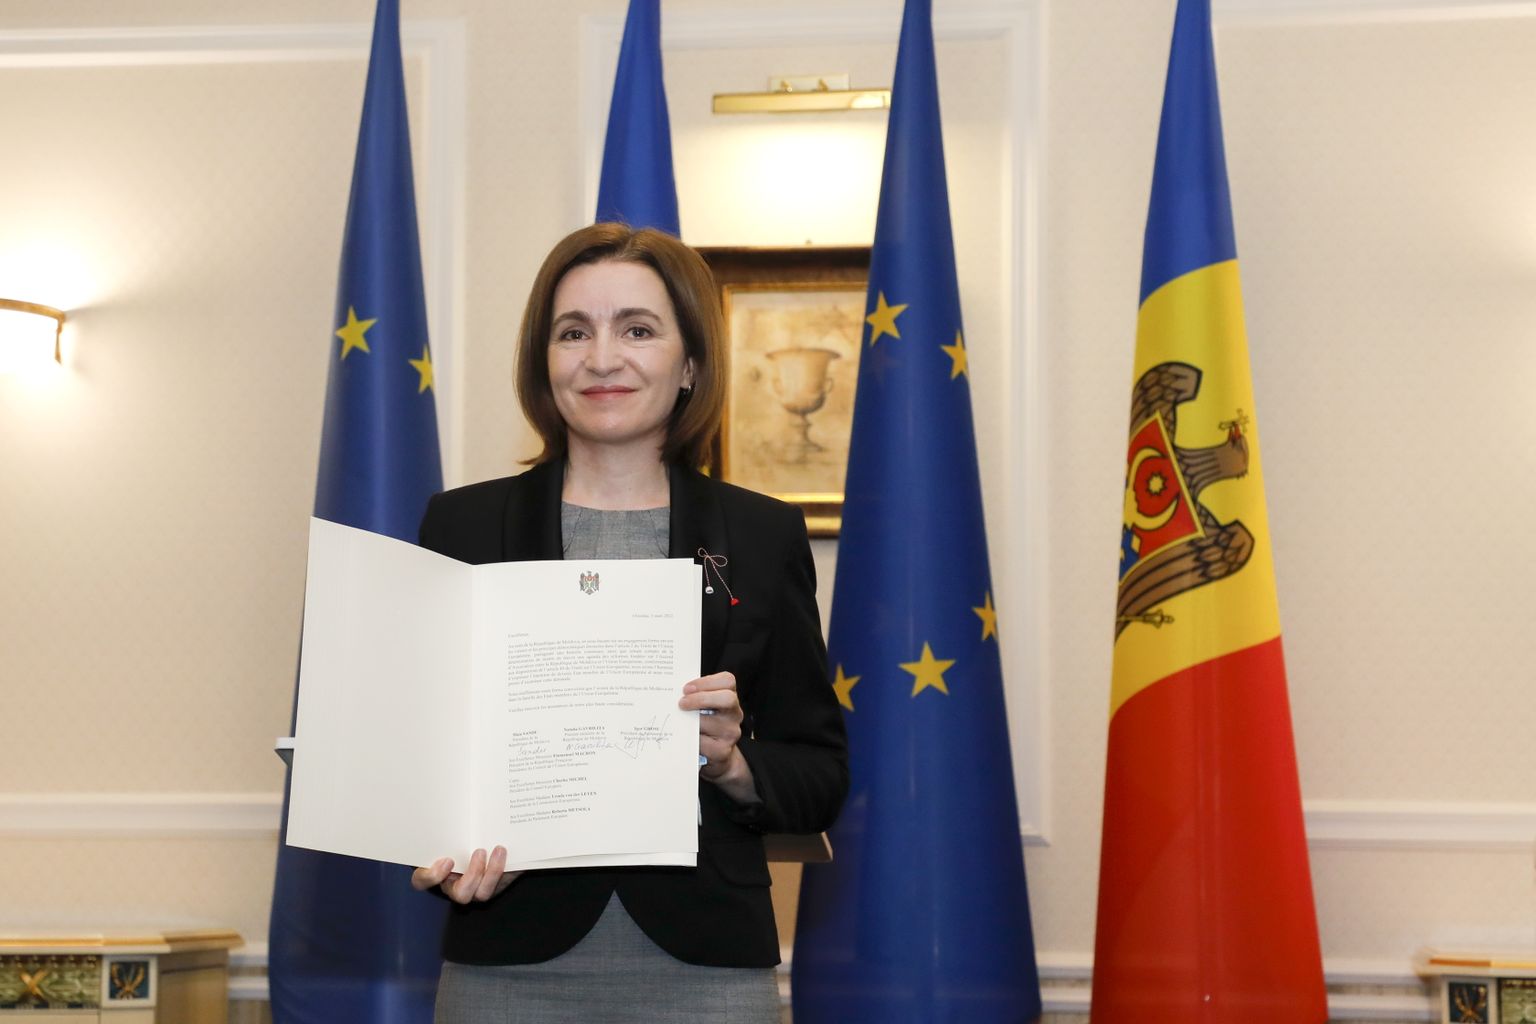 Moldova president Maia Sandu poseerimas meediale ametliku taotluse dokumendiga.